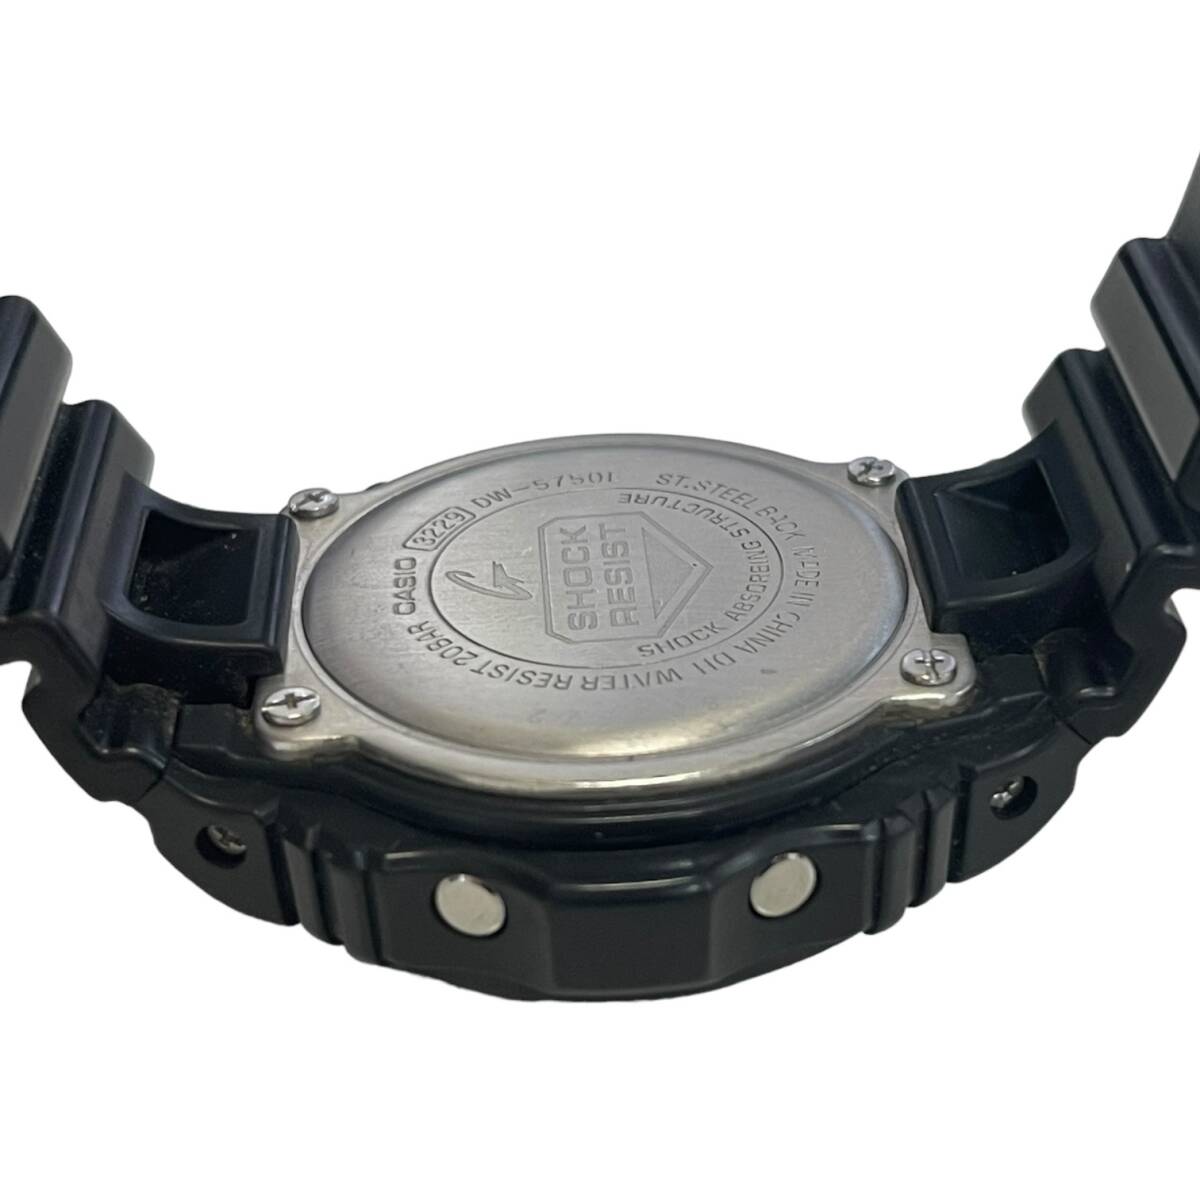 【中古品】CASIO G-SHOCK カシオ DW-5750E ブラック デジタル メンズ腕時計 箱無し 本体のみ hiL6198RO_画像4